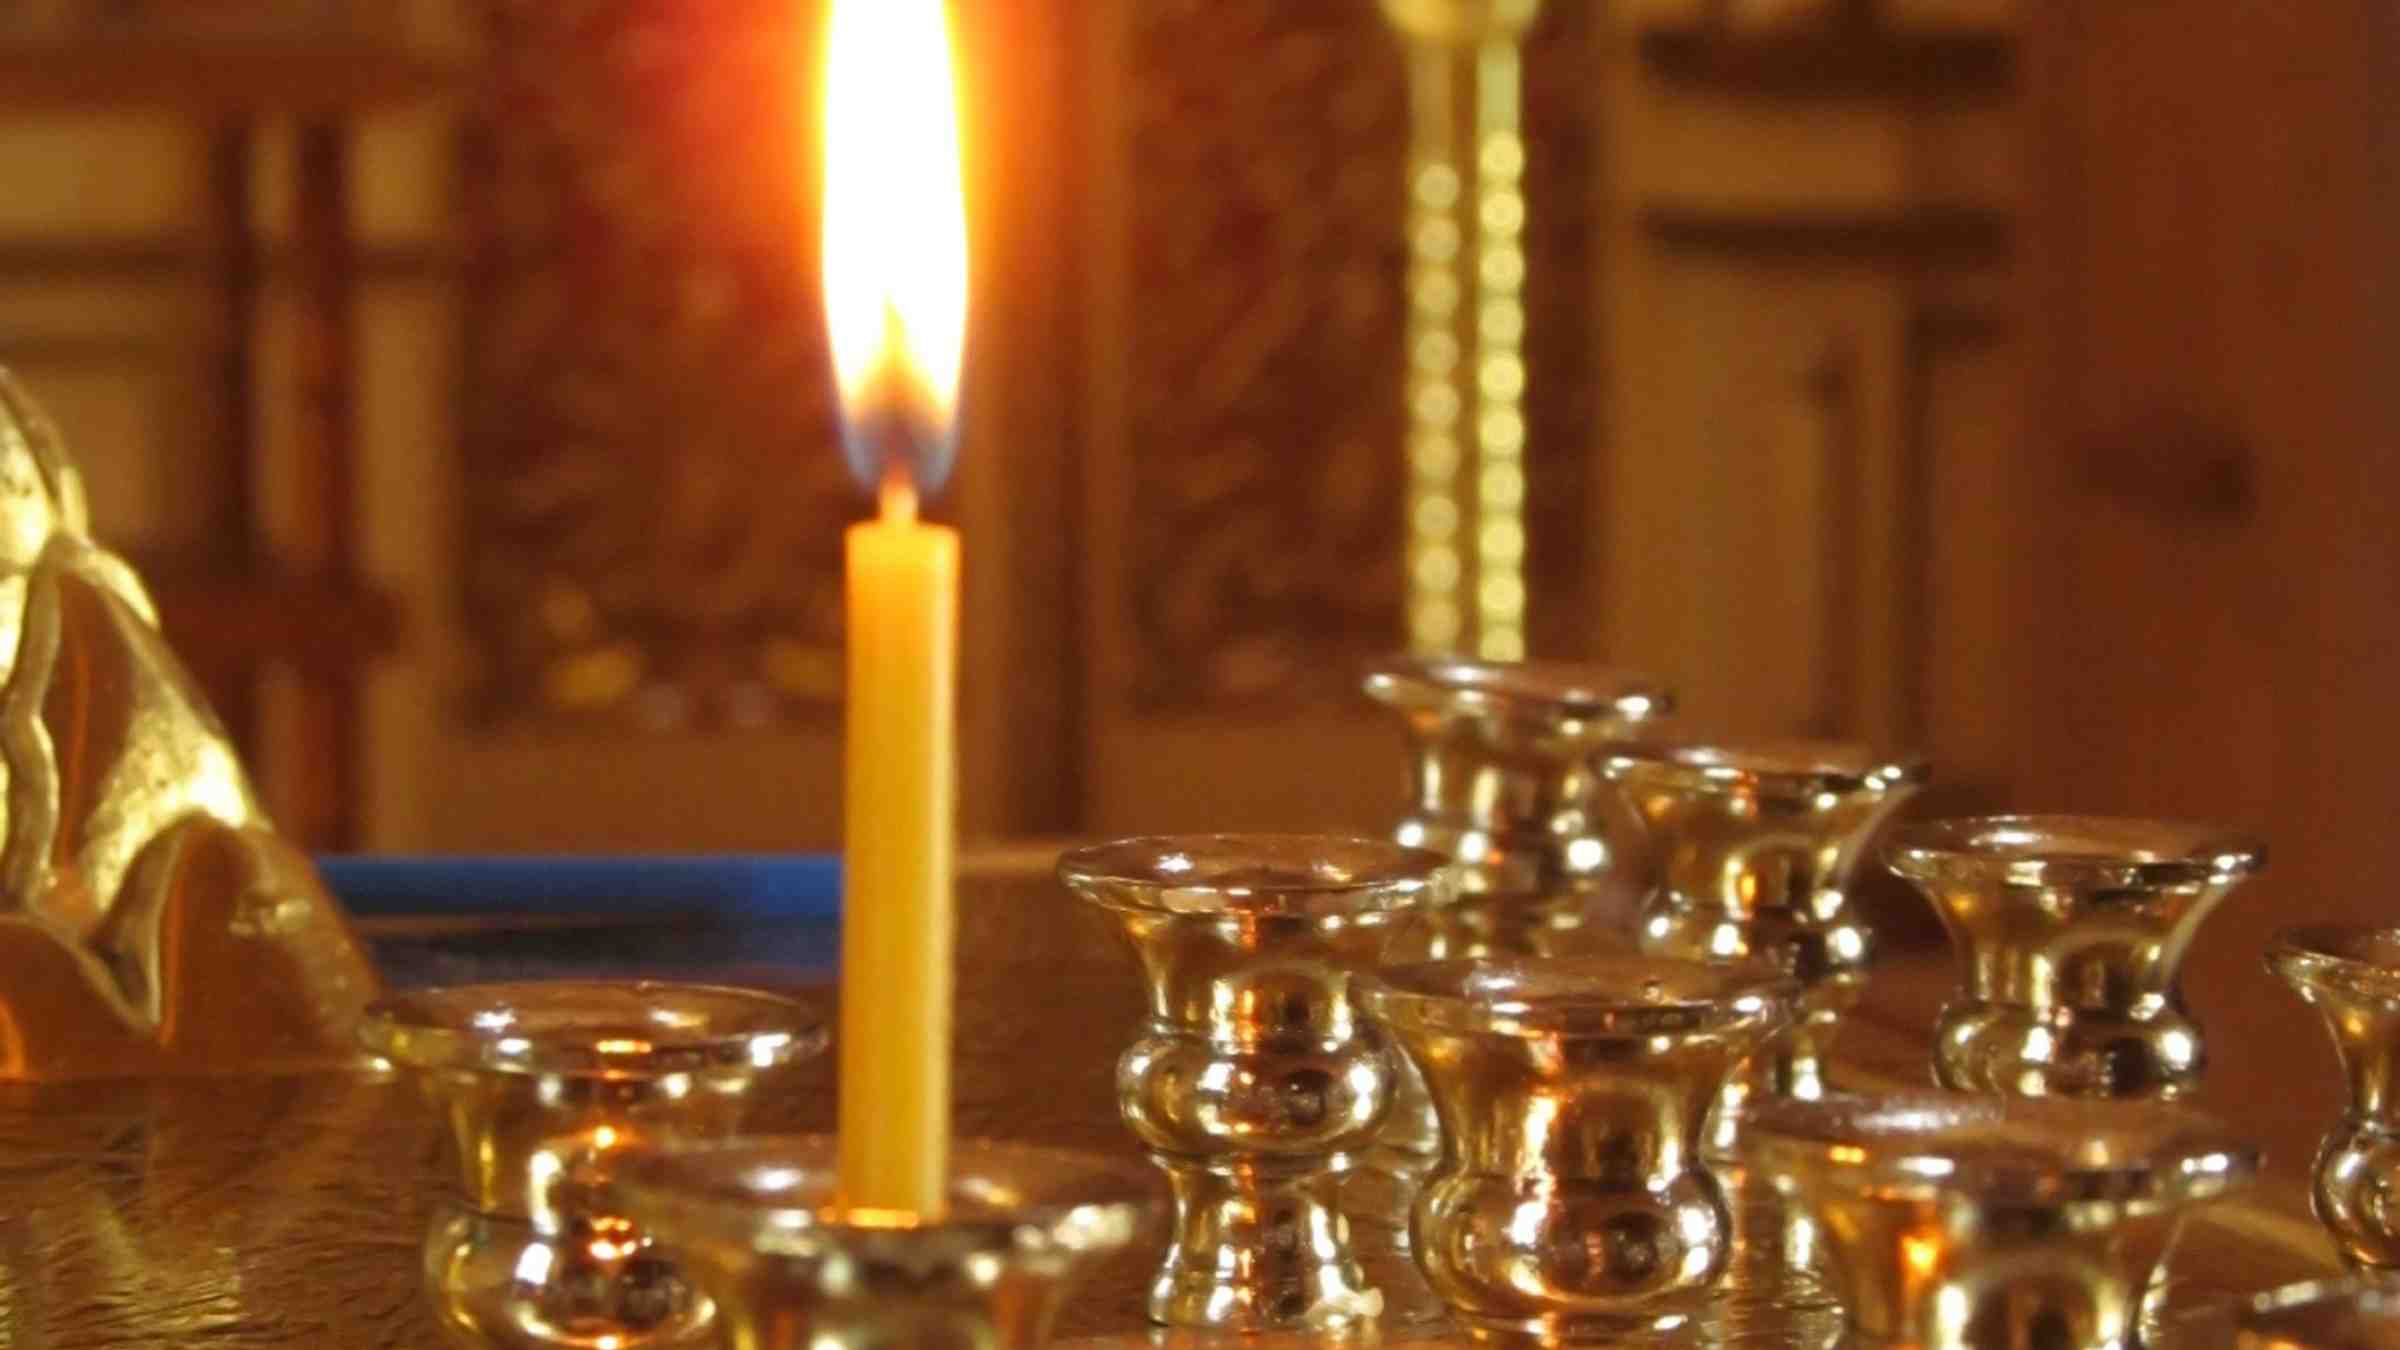 tuohus palaa ortodoksikirkossa